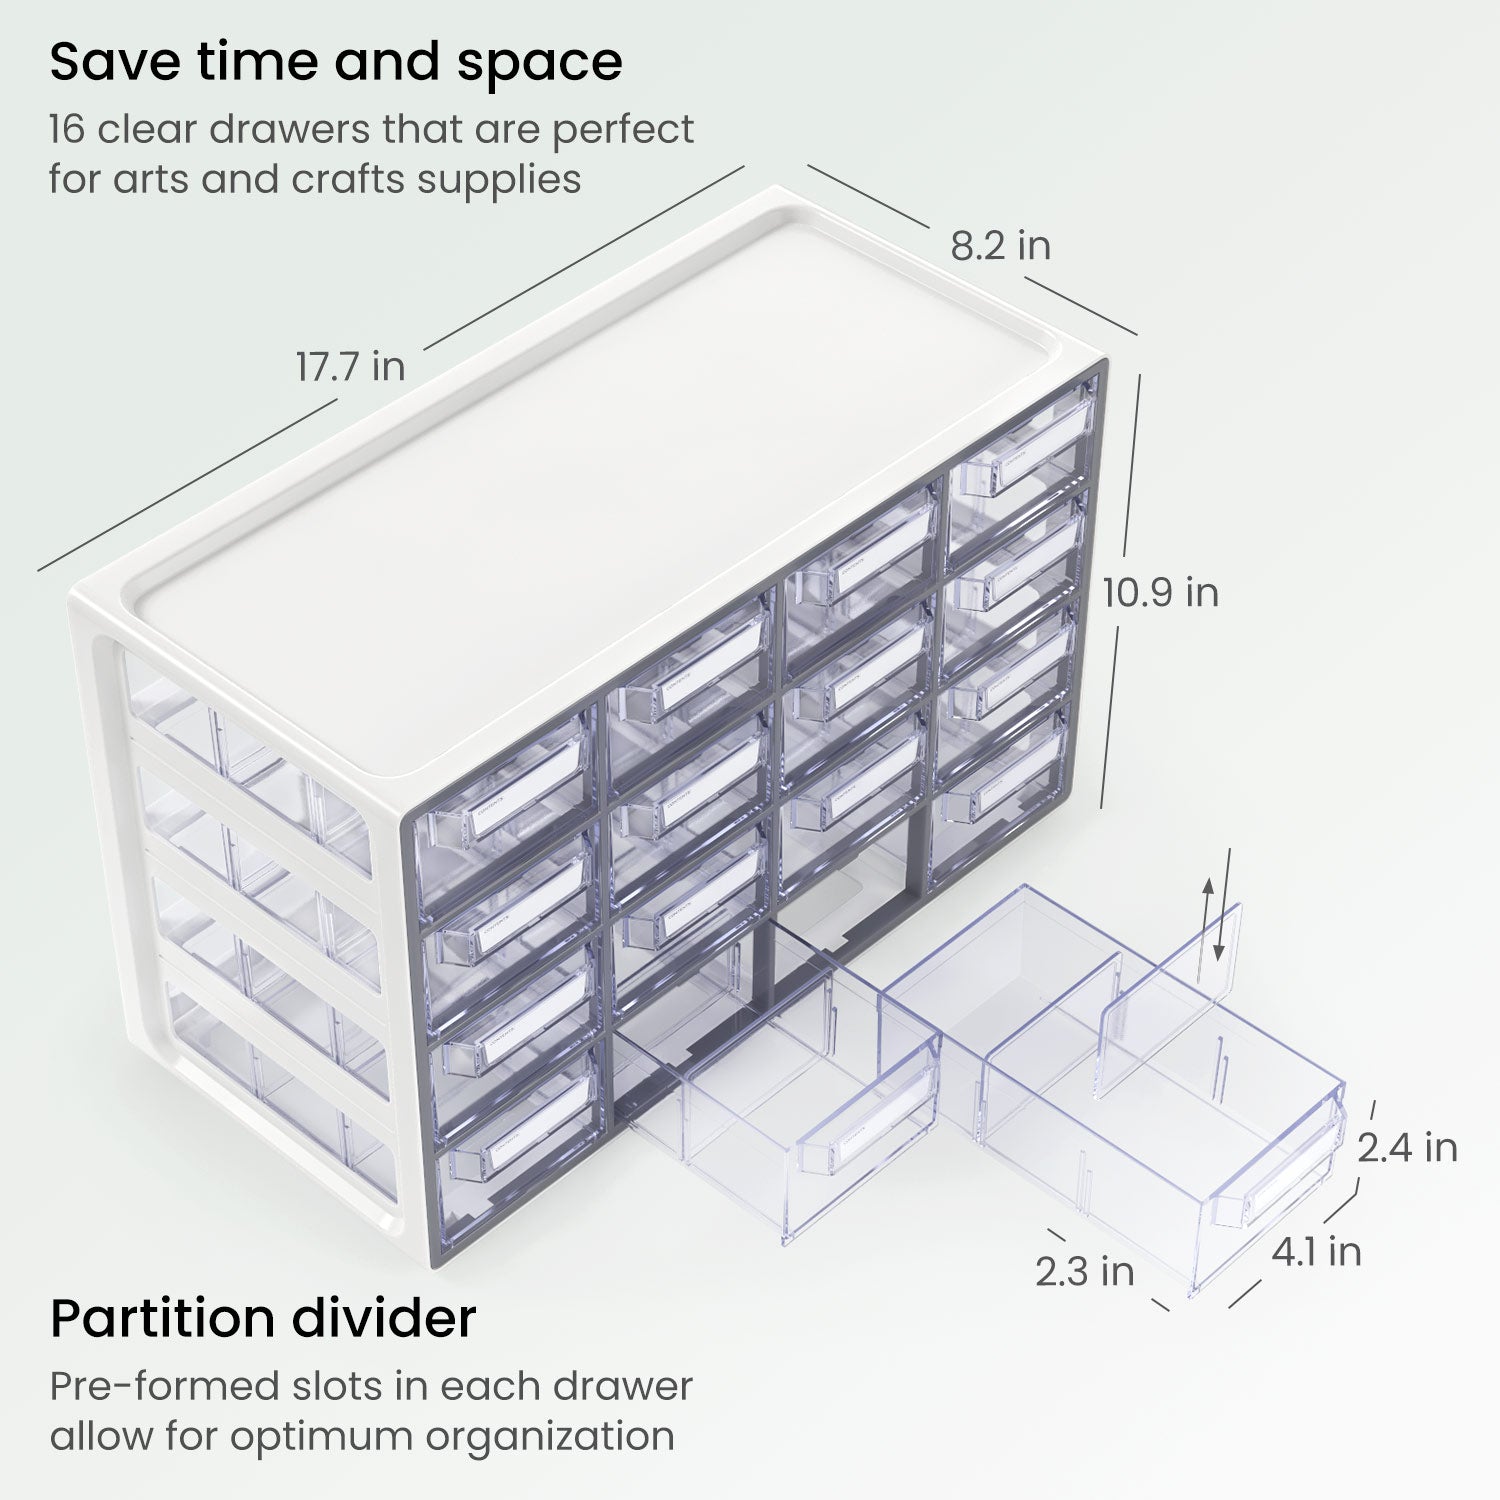 Arteza 16 - Drawer Multipurpose Semi - Clear Storage Cabinet in Gray